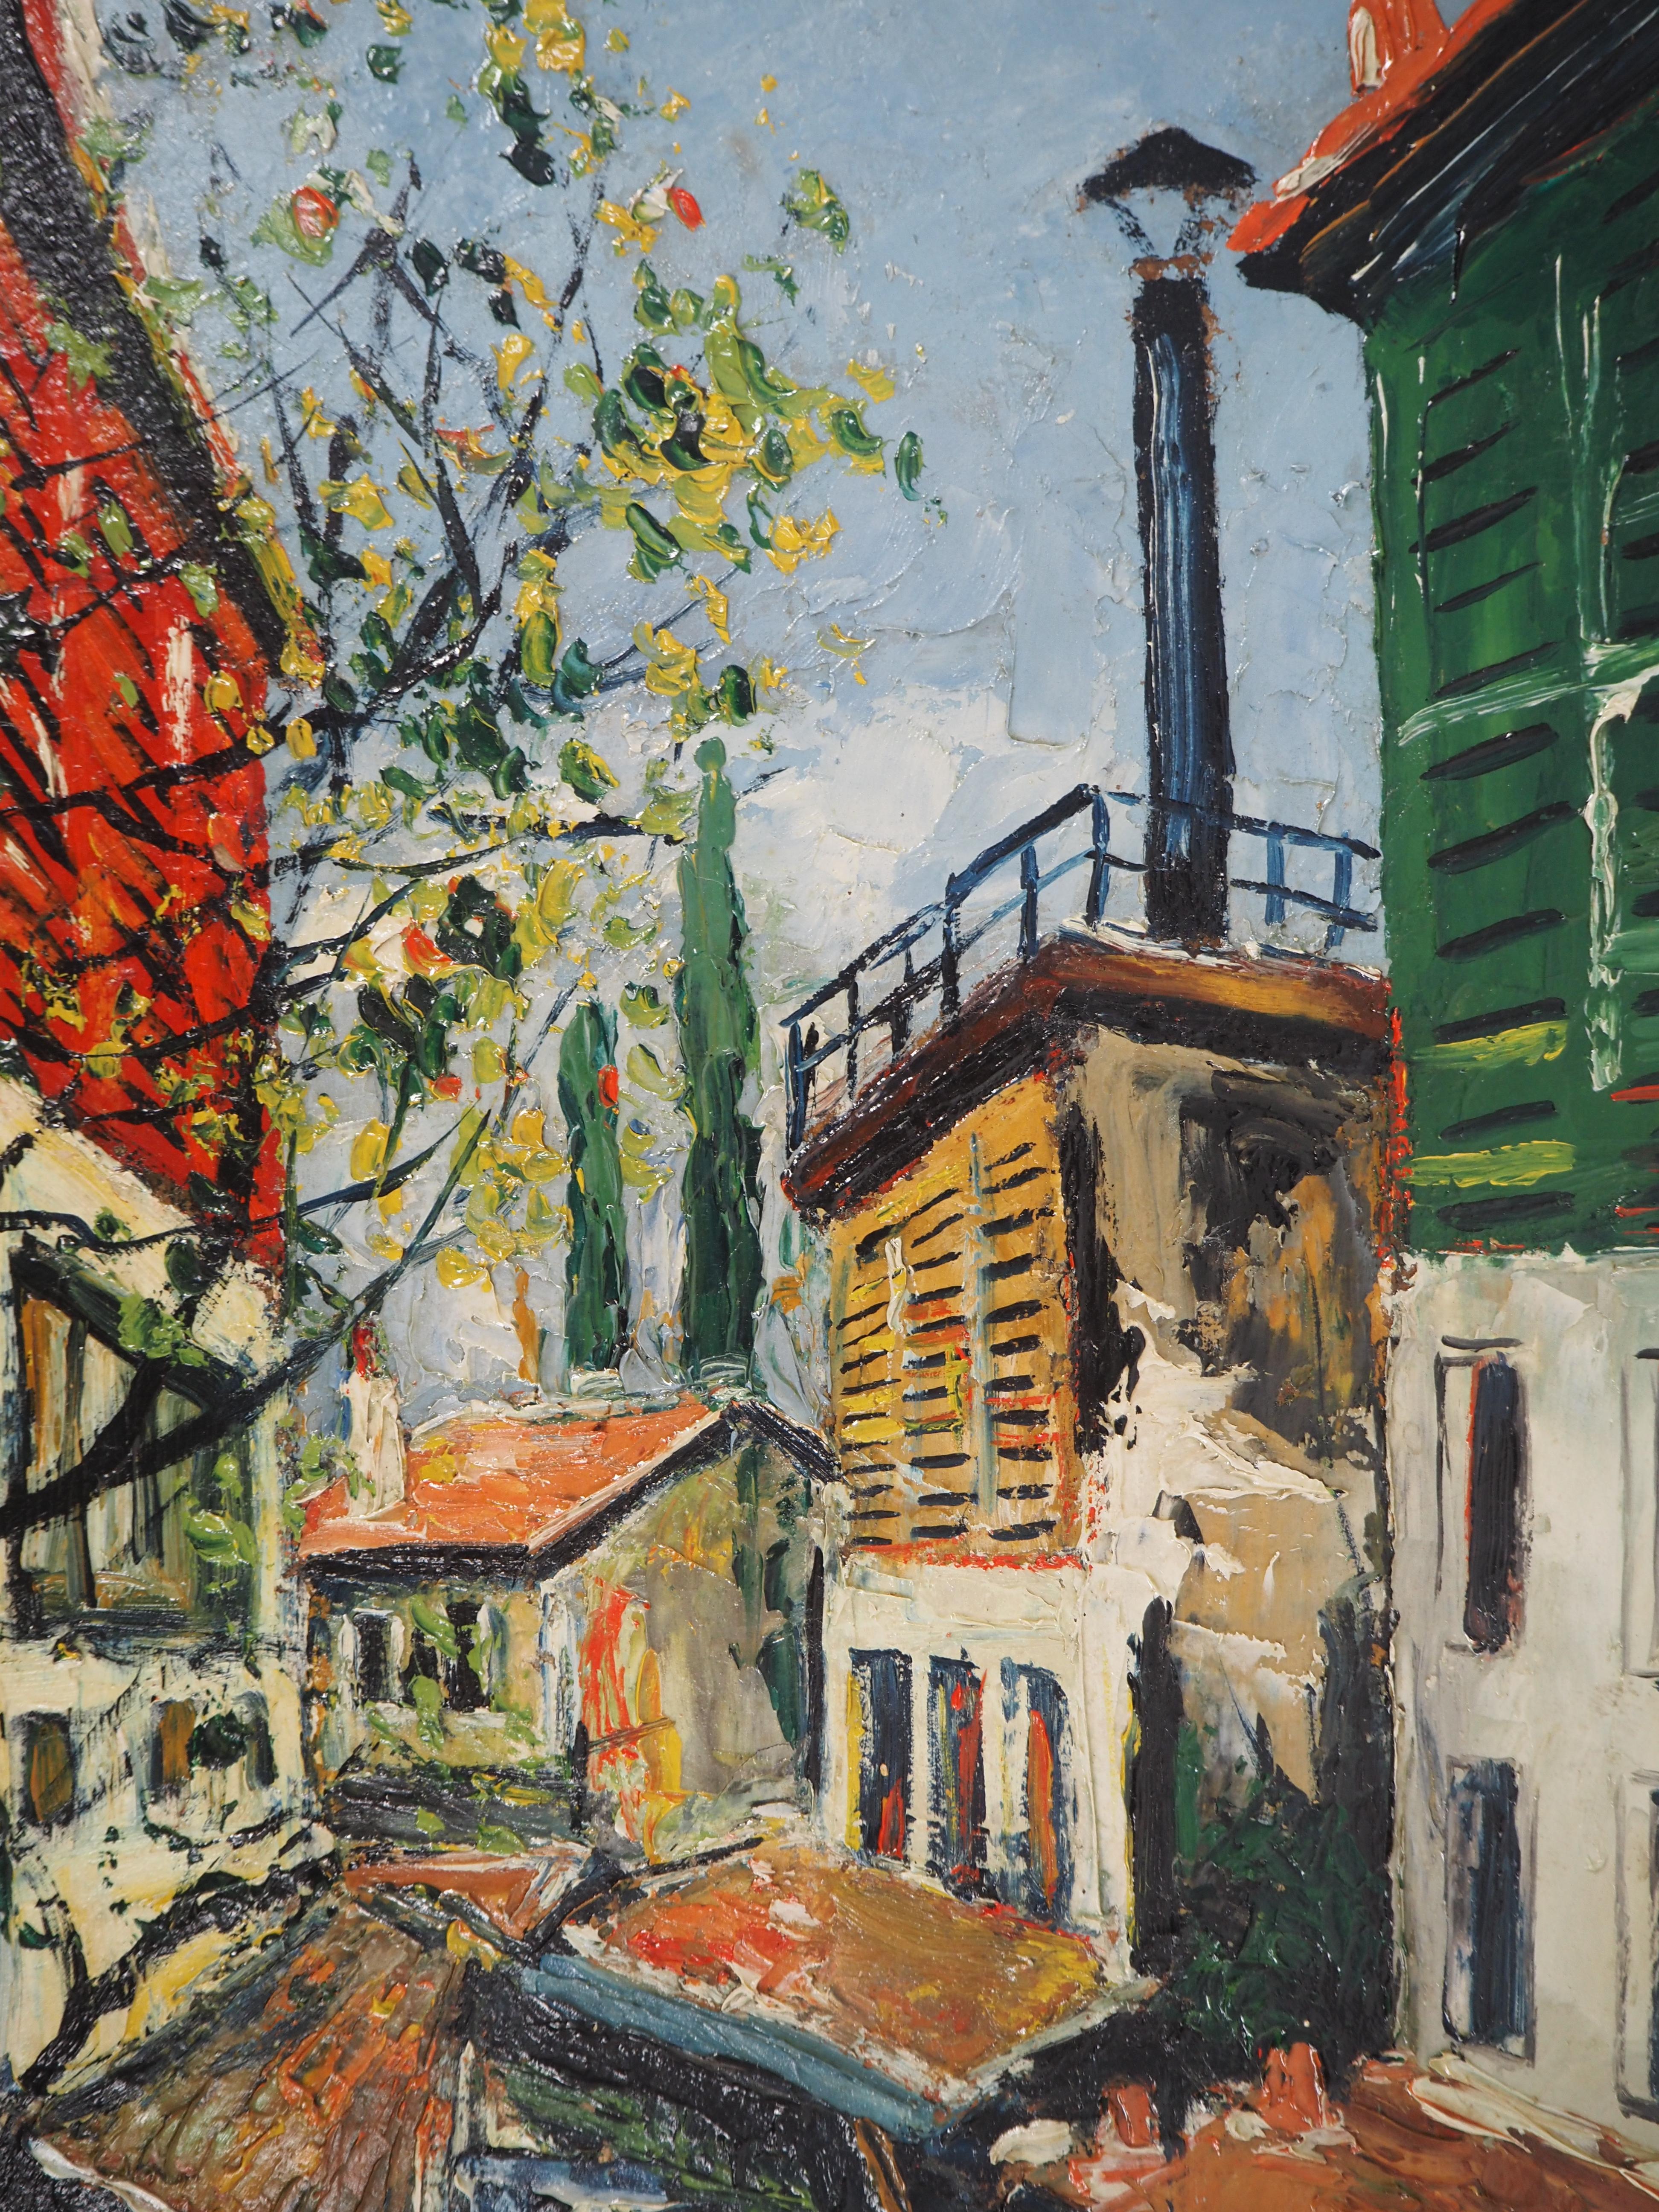 Paris : Small Houses Near Bievre River - Original oil on panel - Signed - Brown Landscape Painting by Elisée Maclet